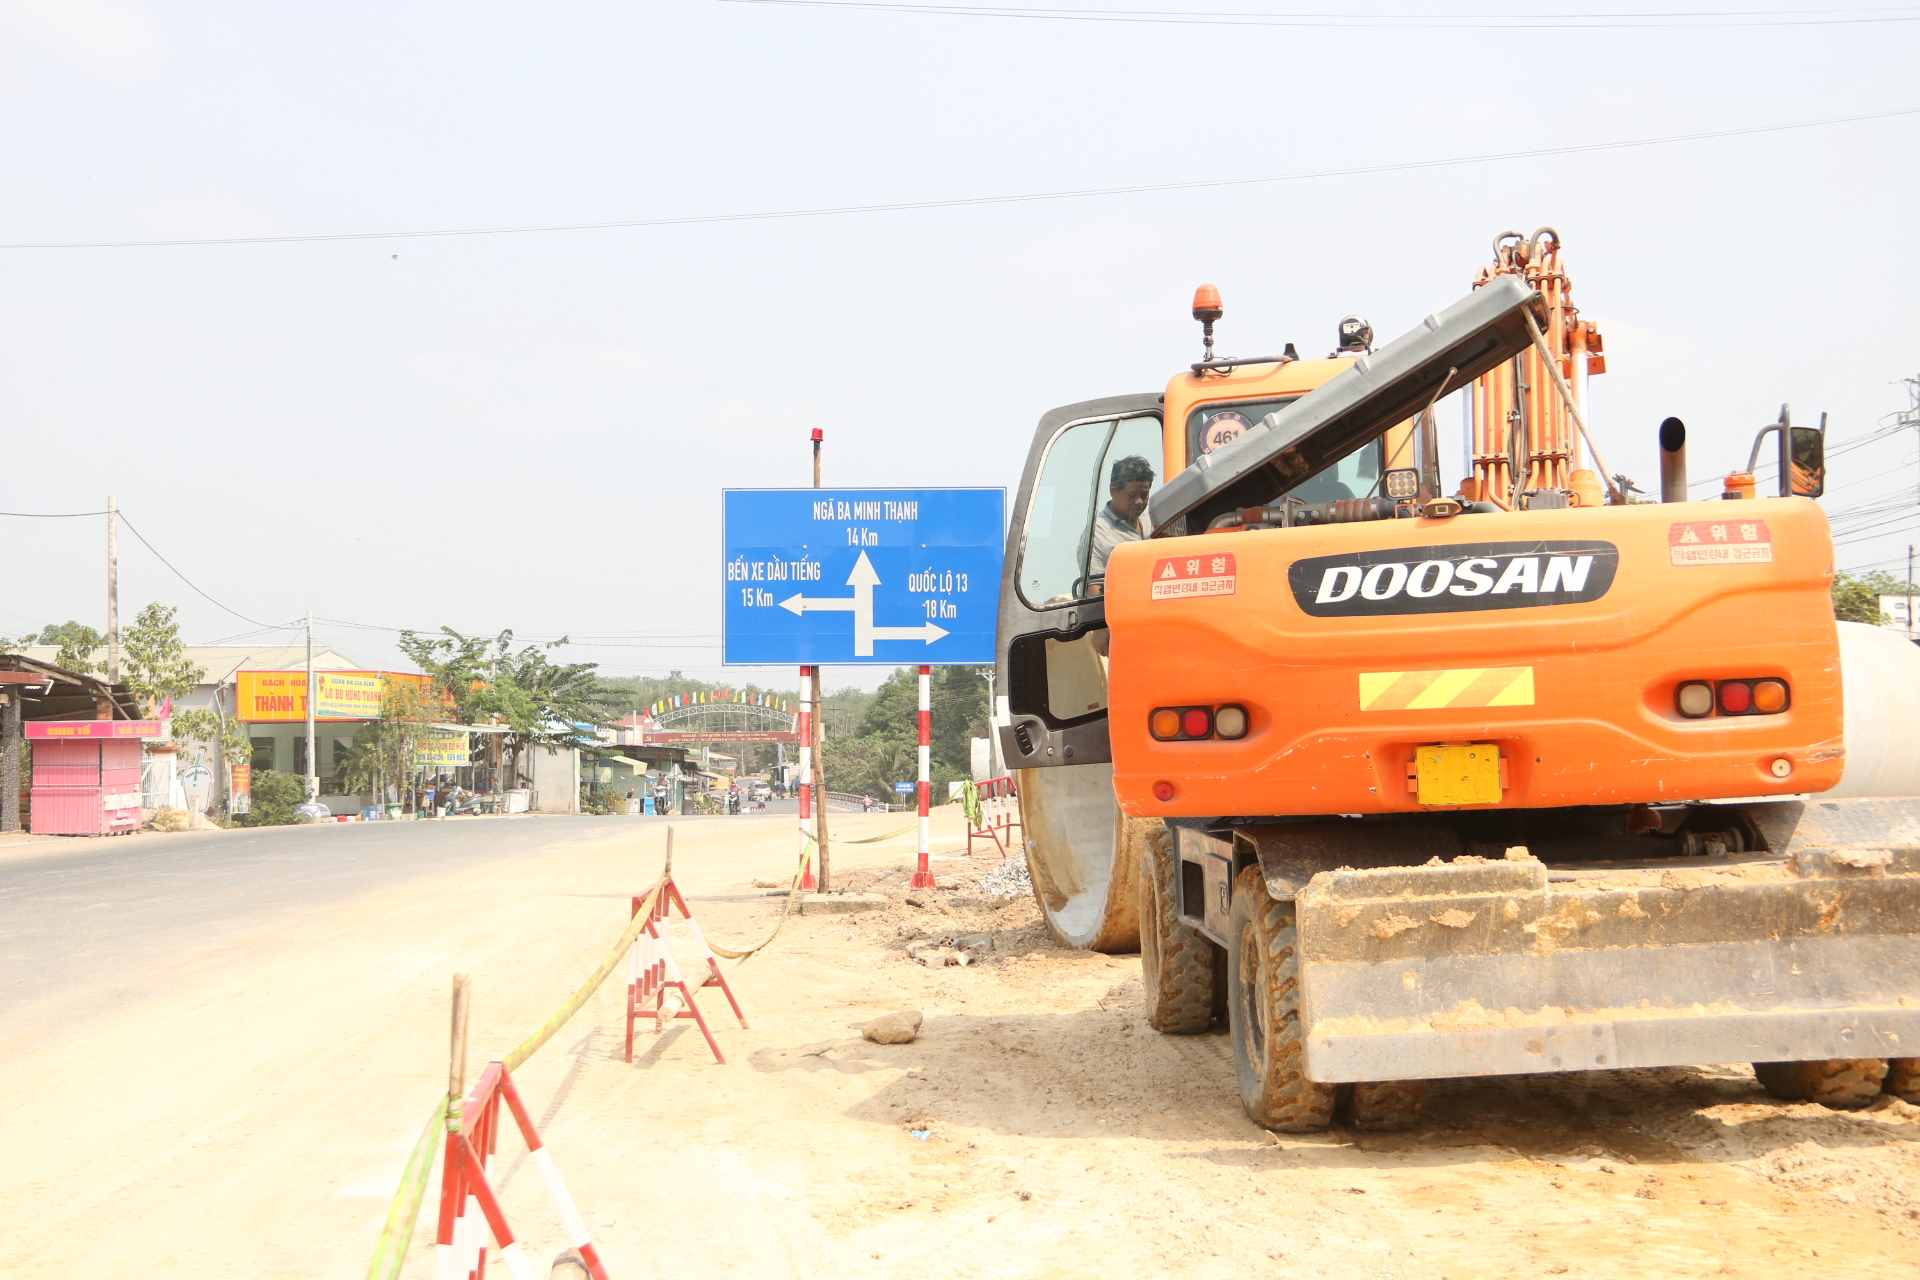 UBND tỉnh Bình Dương cho biết, mới đây nhất, UBND huyện Dầu Tiếng khởi công dự án nâng cấp, mở rộng đường ĐT 749A đoạn qua trung tâm xã Long Hòa.